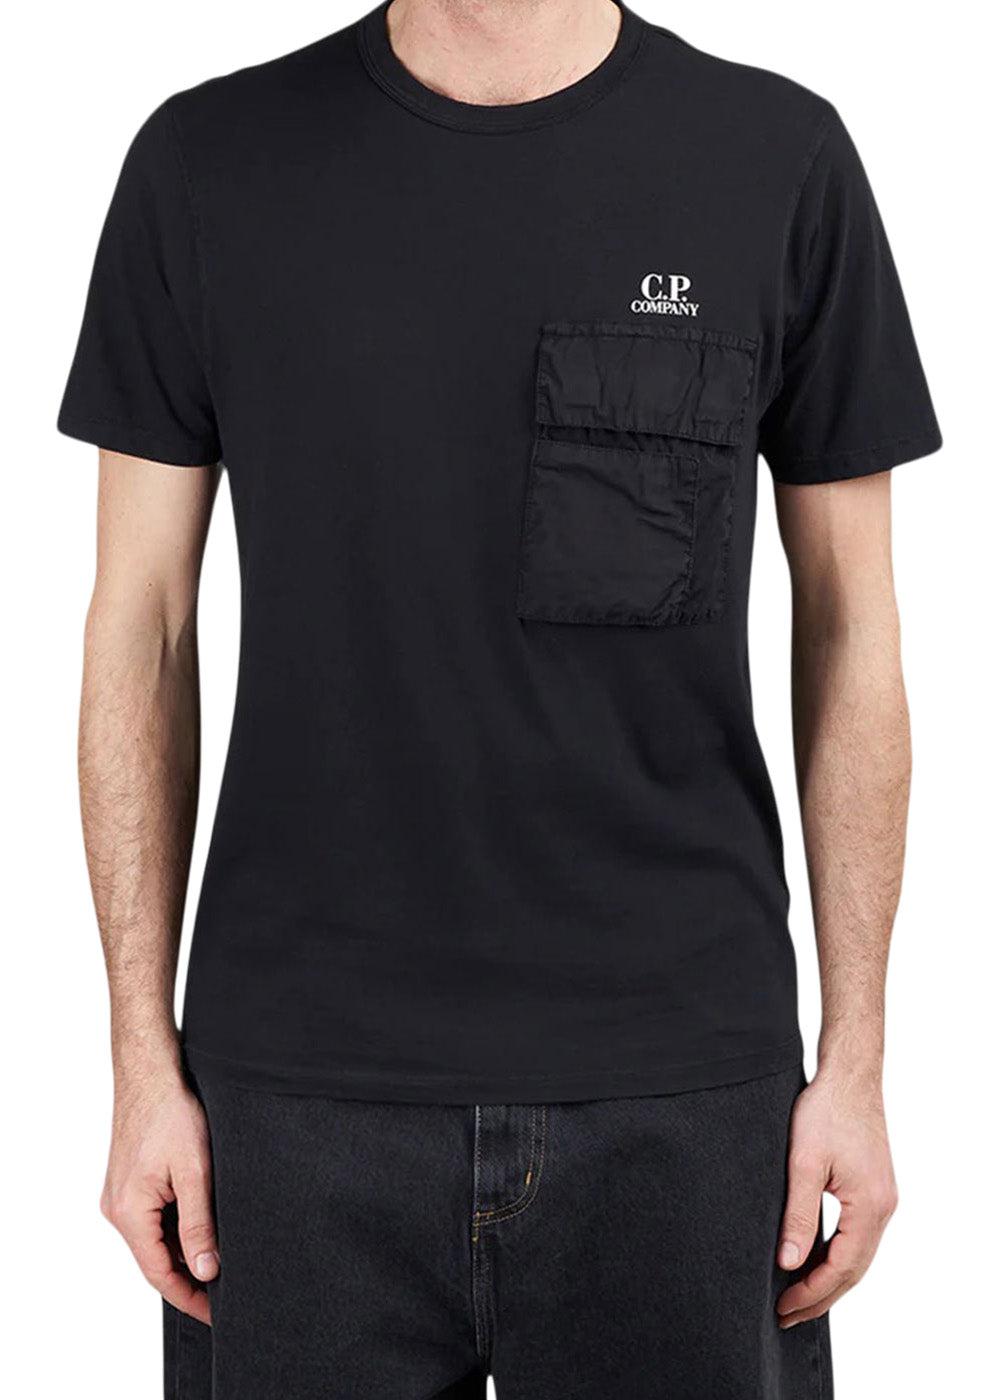 C.P. Companys T-Shirts - Short Sleeve Jersey 20/1 - Black. Køb t-shirts her.